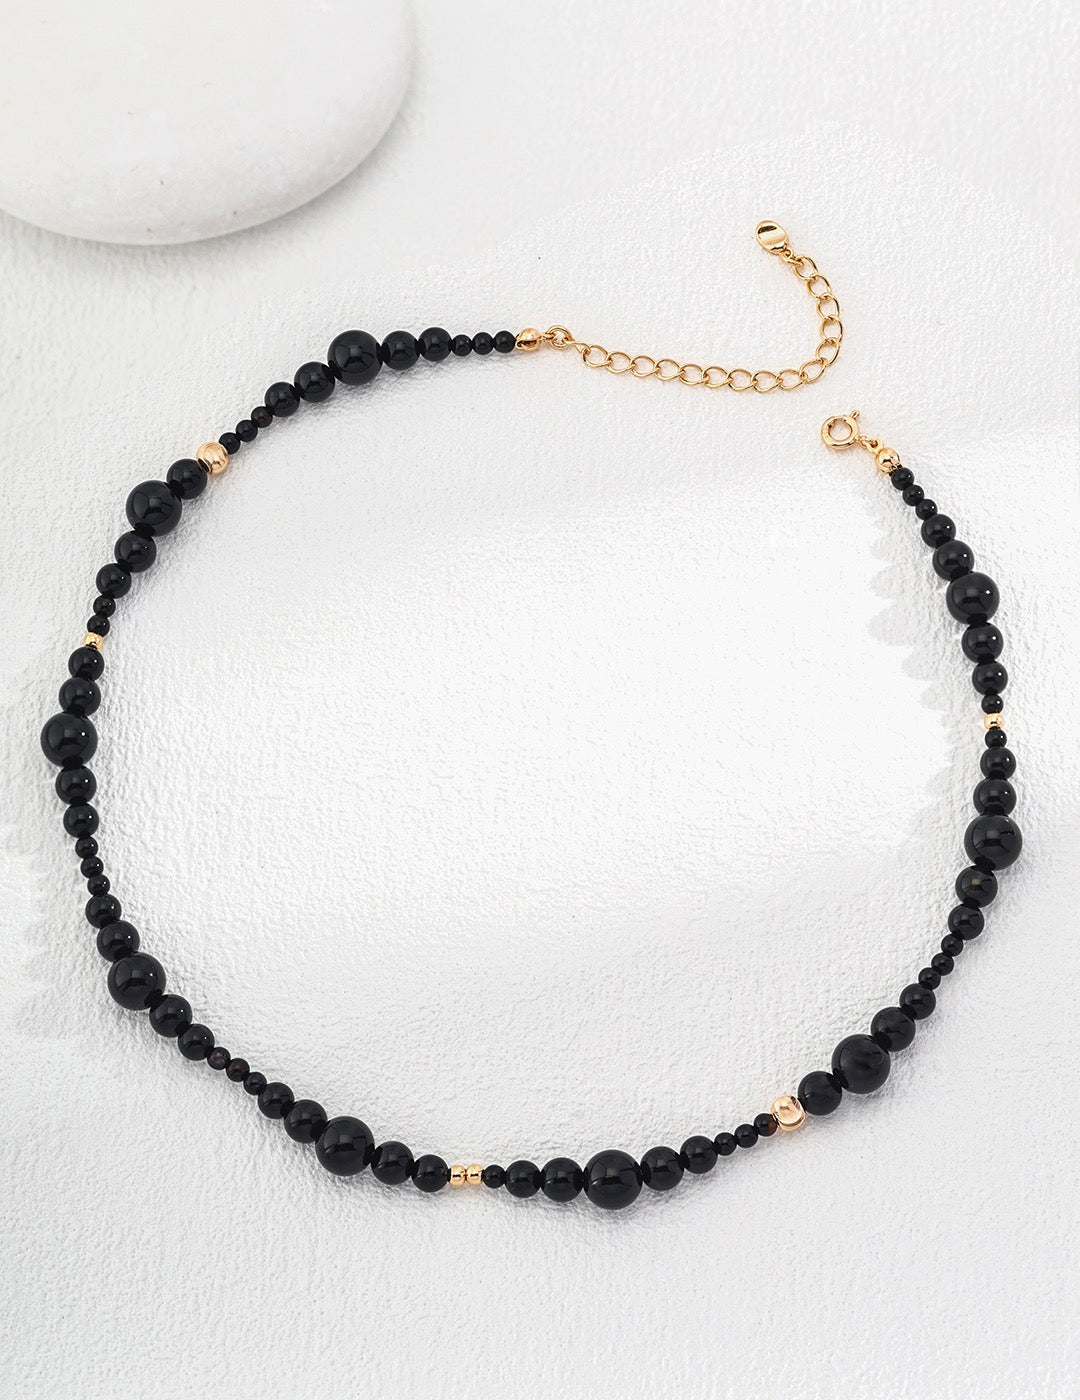 Black Onyx Sterling Silver Bracelet and Necklace sets - Crystal Together